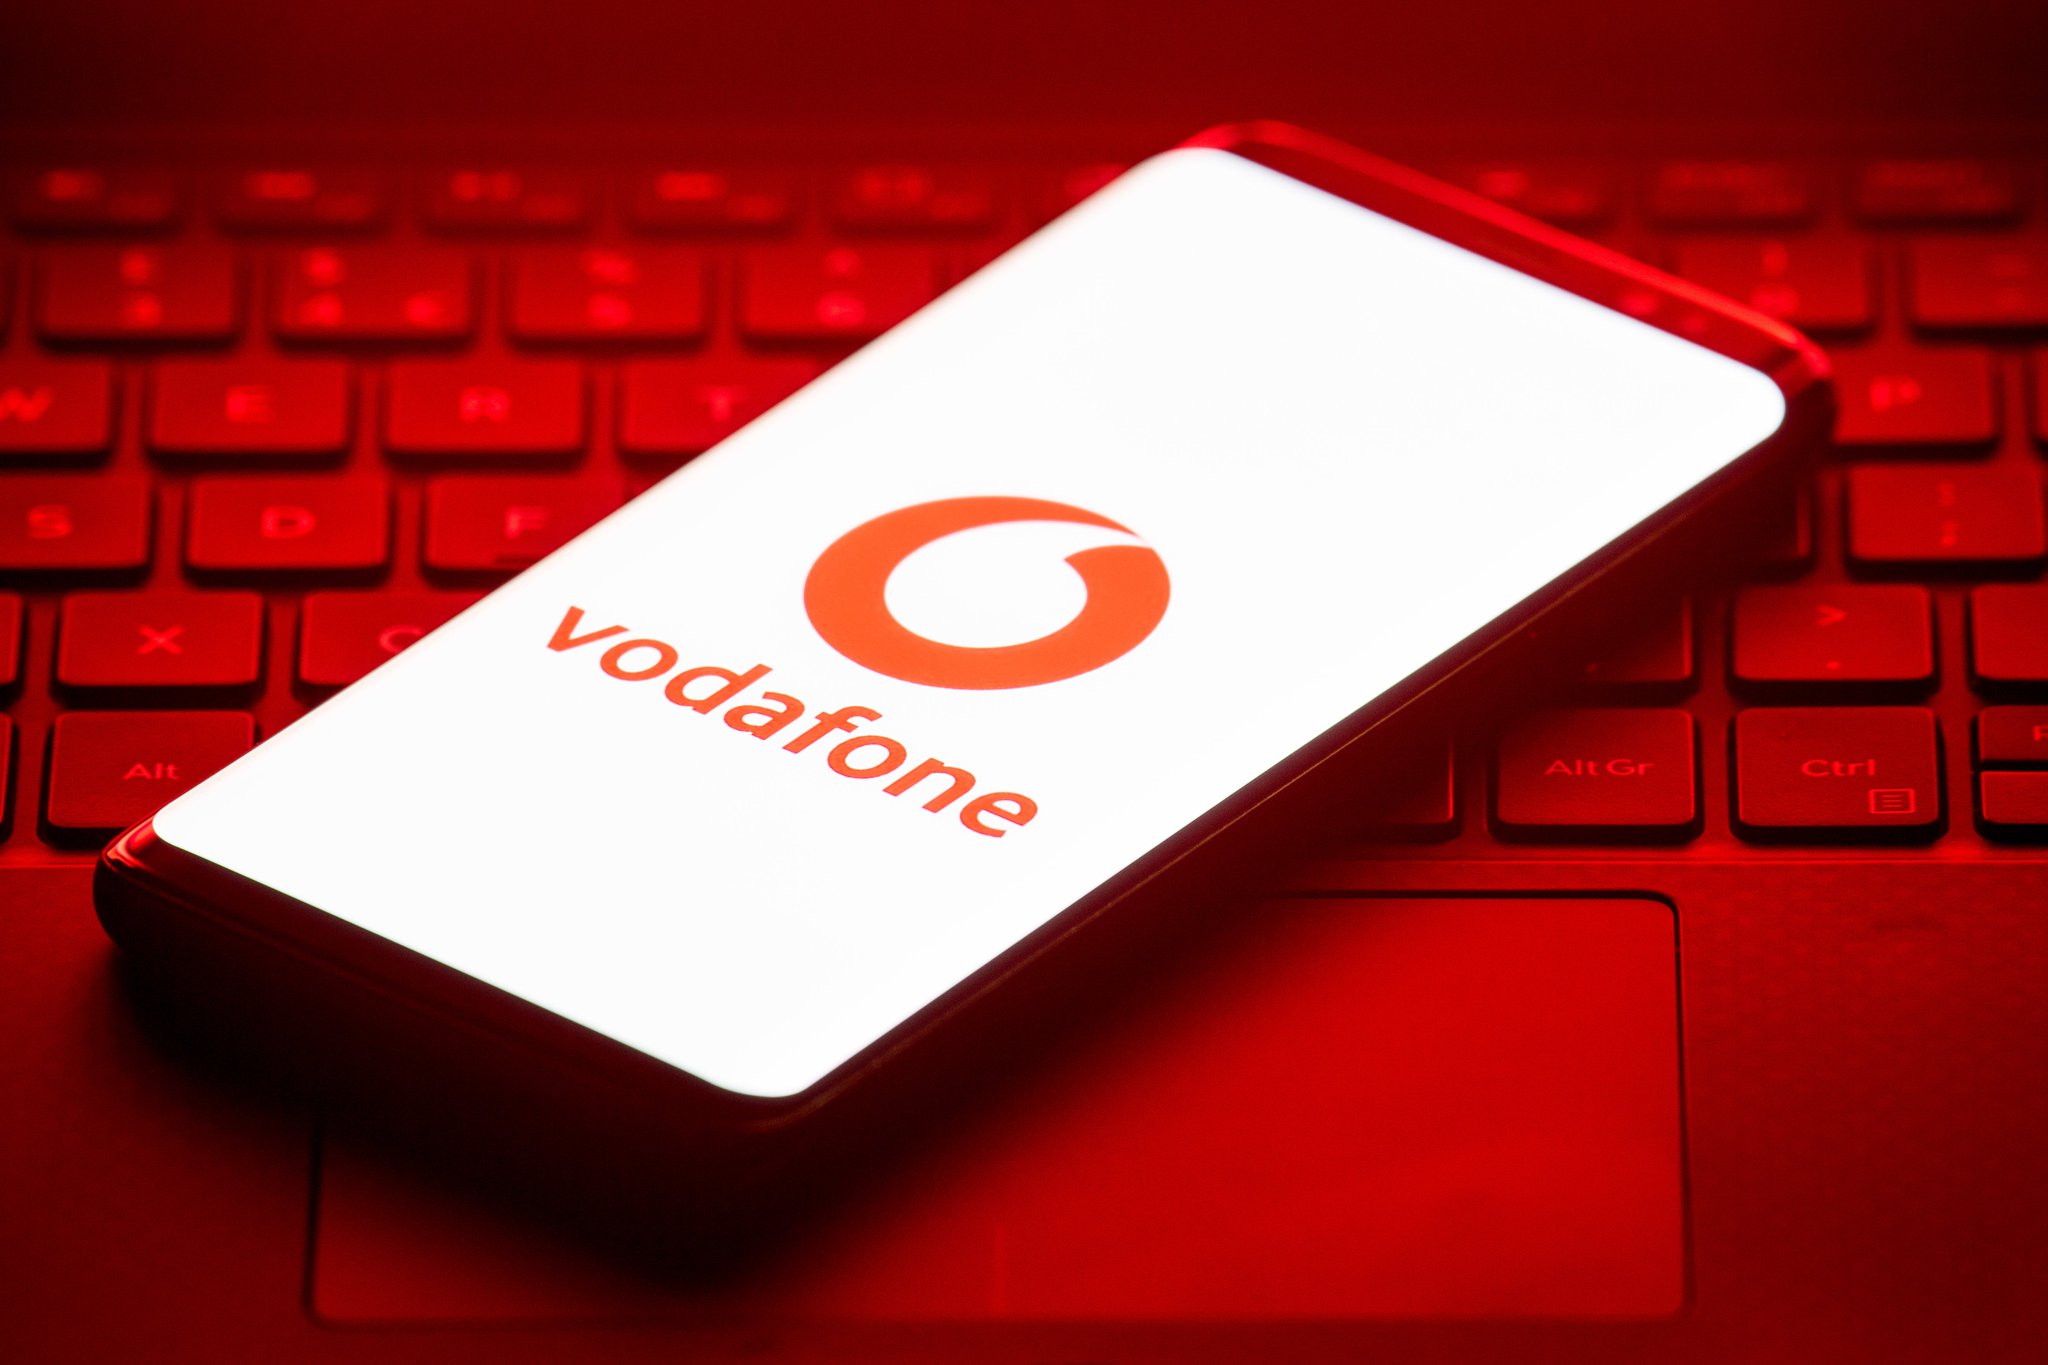 Новости Днепра про Связь в норме: Vodafone работает в обычном режиме